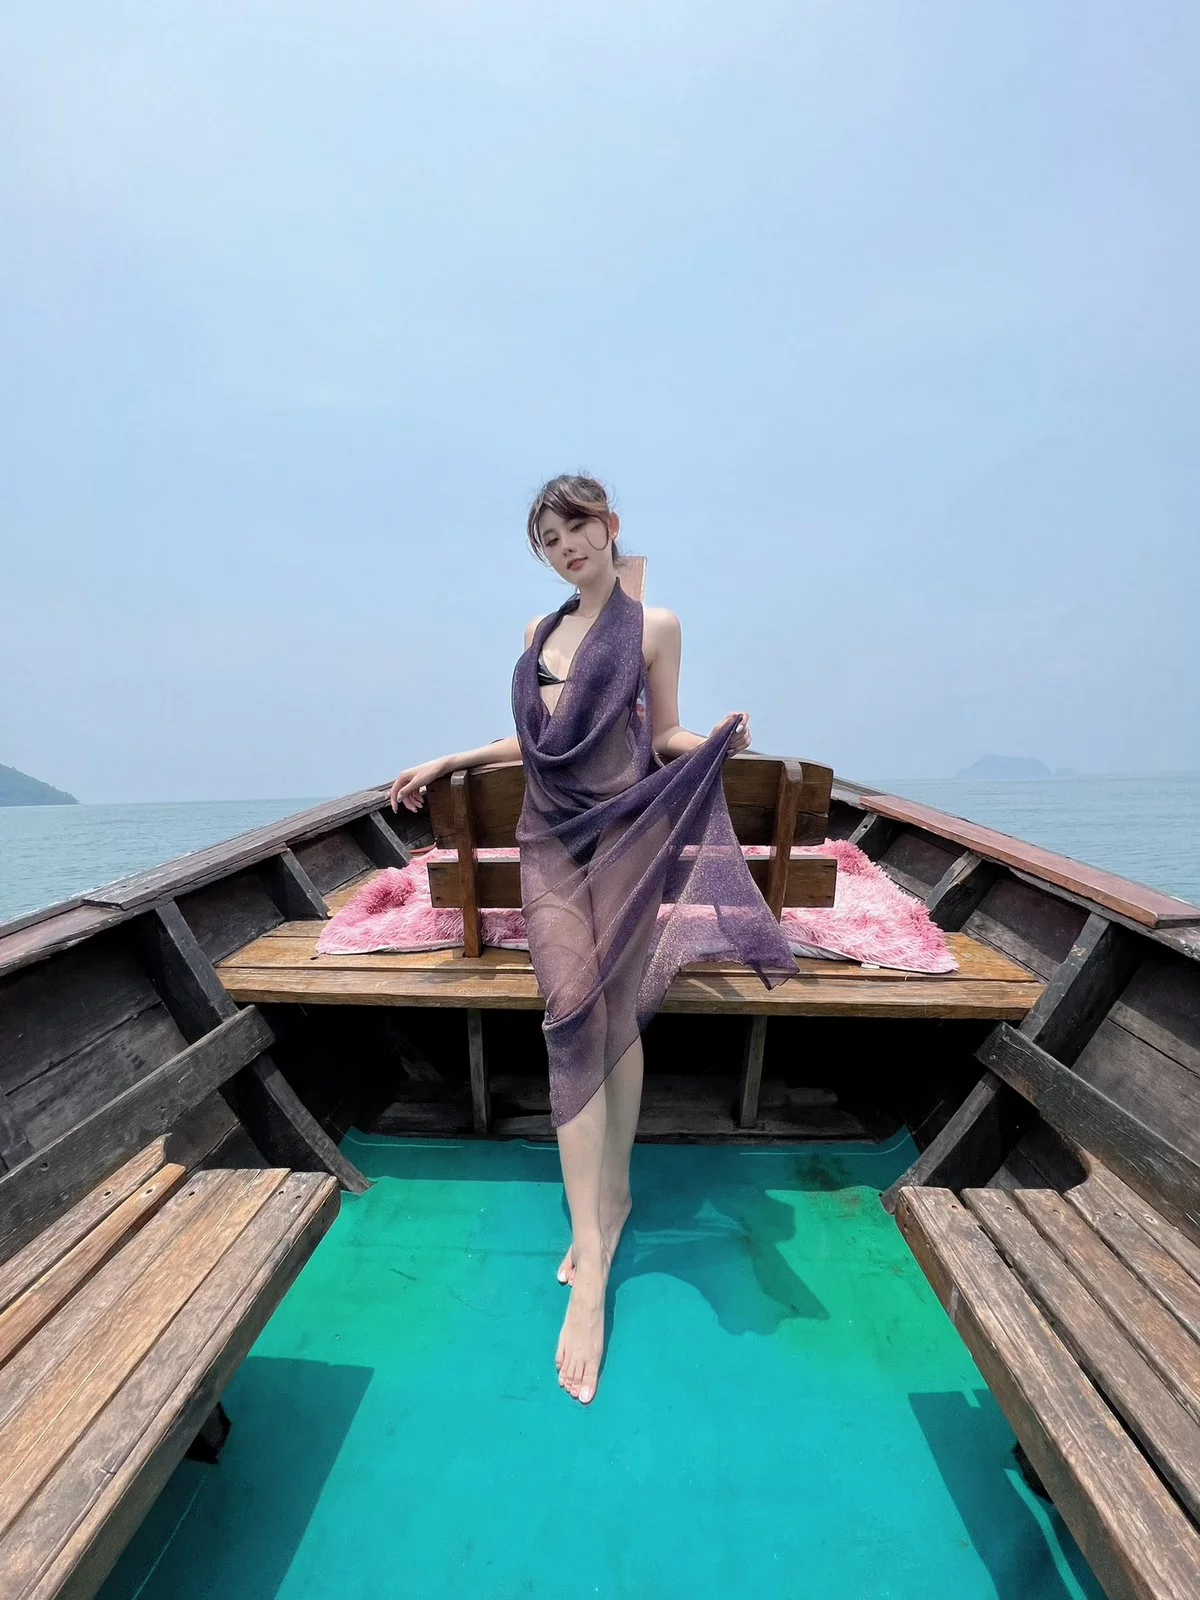 Xgyw.Org_秀人模特就是阿朱啊紫色纱裙主题性感薄纱长裙+比基尼秀完美身材诱惑写真111P